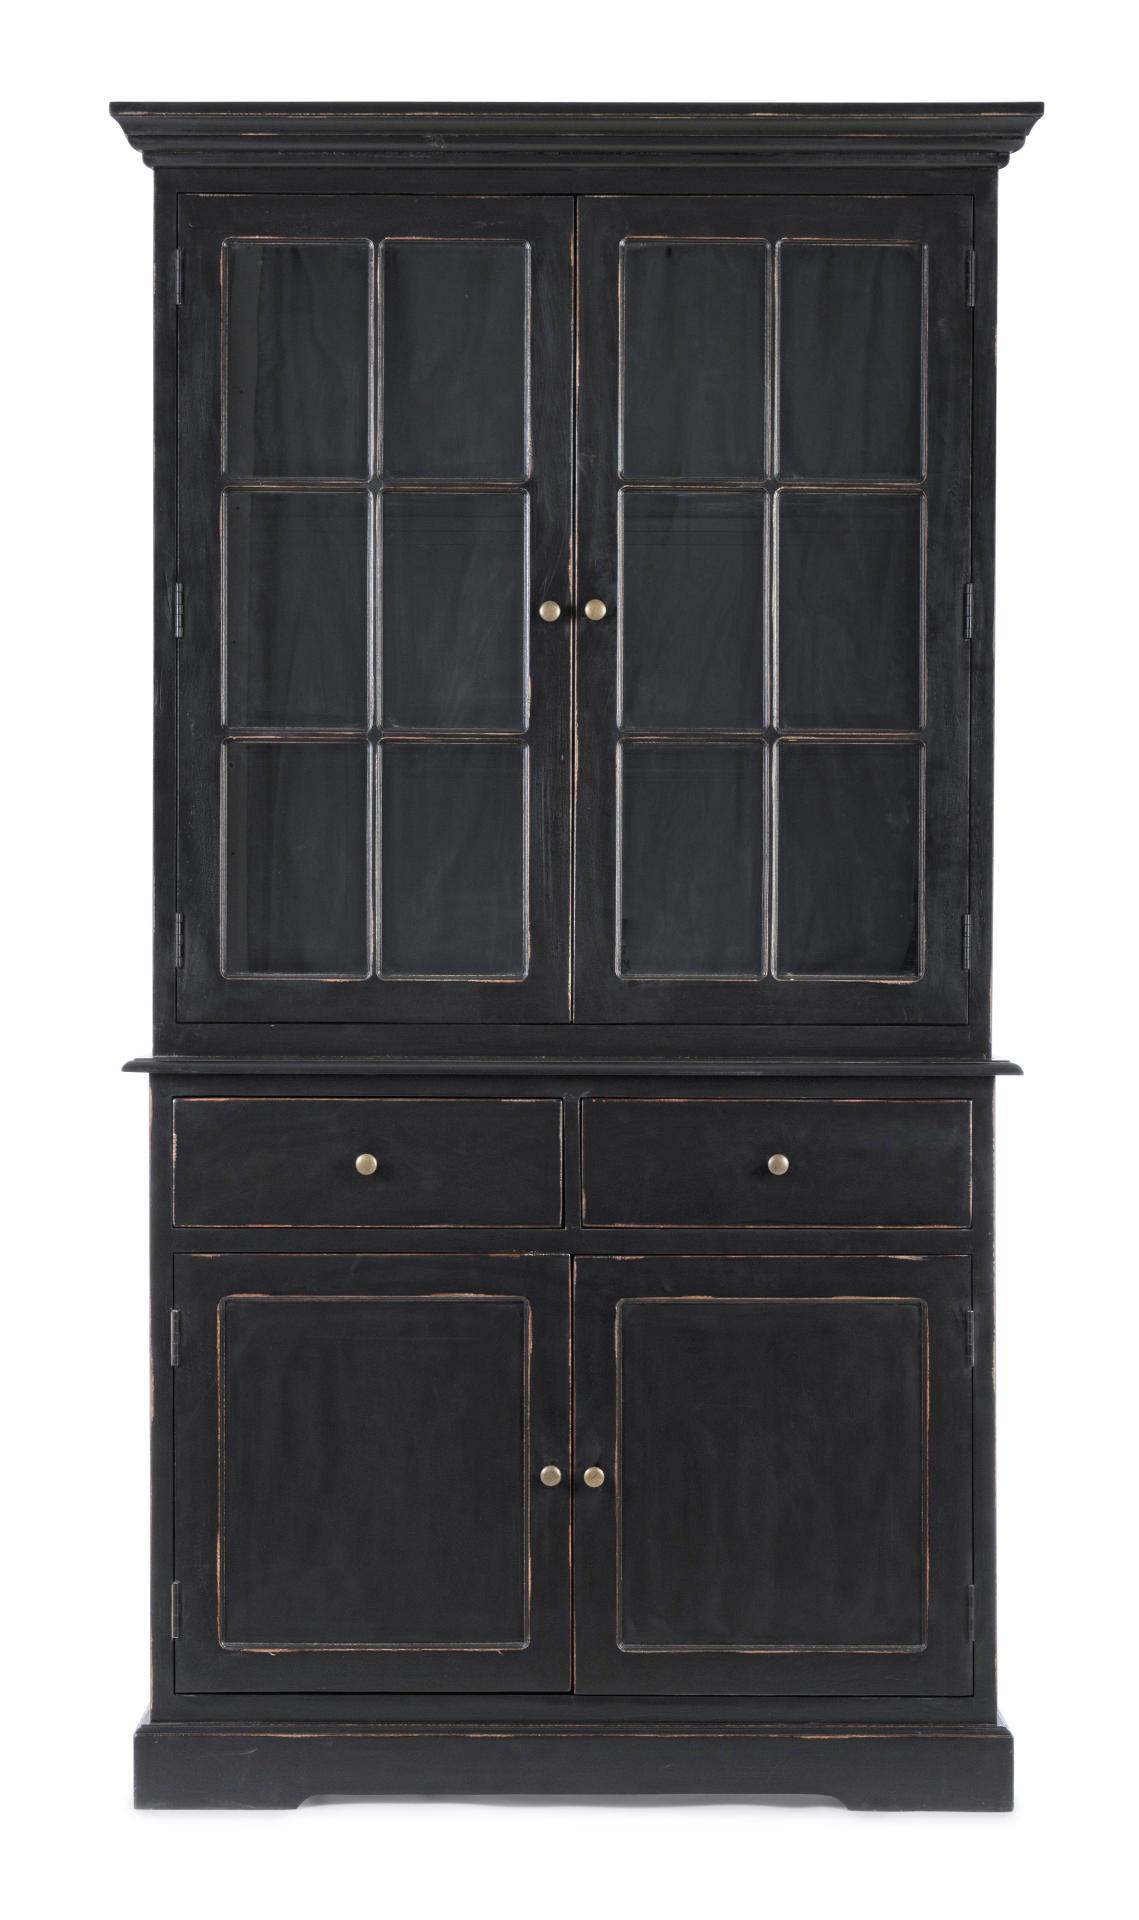 Die Vitrine Jefferson überzeugt mit ihrem klassischen Design. Gefertigt wurde sie aus Mangoholz, welches einen schwarzen Farbton besitzt. Die Vitrine verfügt über zwei Glastüren, zwei Holztüren und zwei Schubladen mit ausreichend Stauraum im inneren. Die 